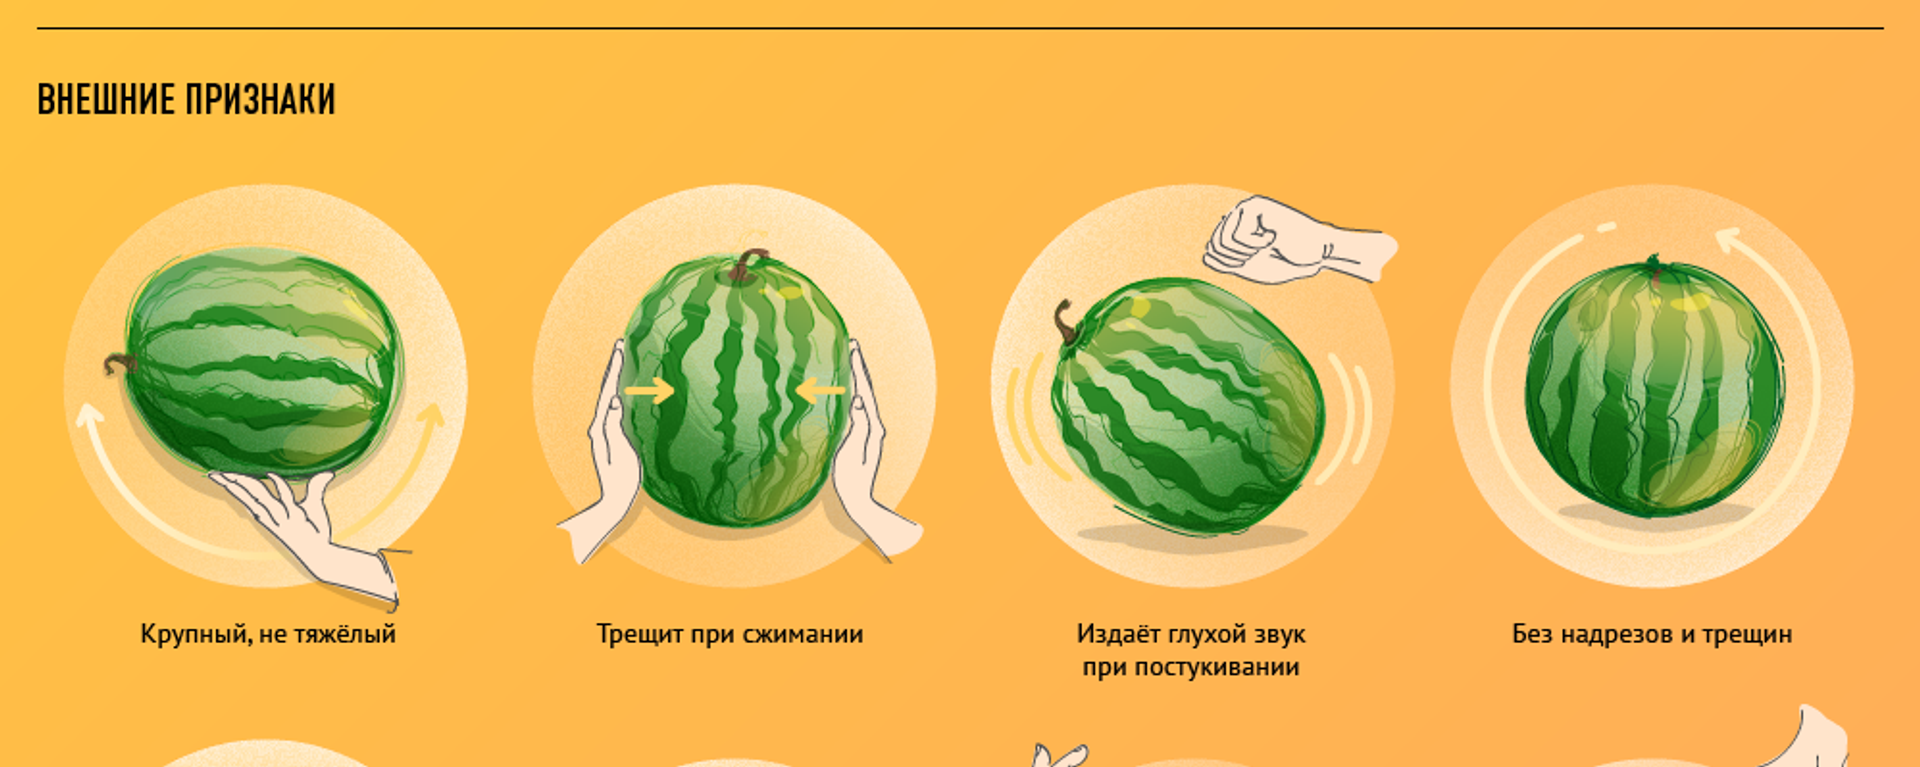 Как выбрать самый вкусный арбуз - Sputnik Узбекистан, 1920, 22.07.2019